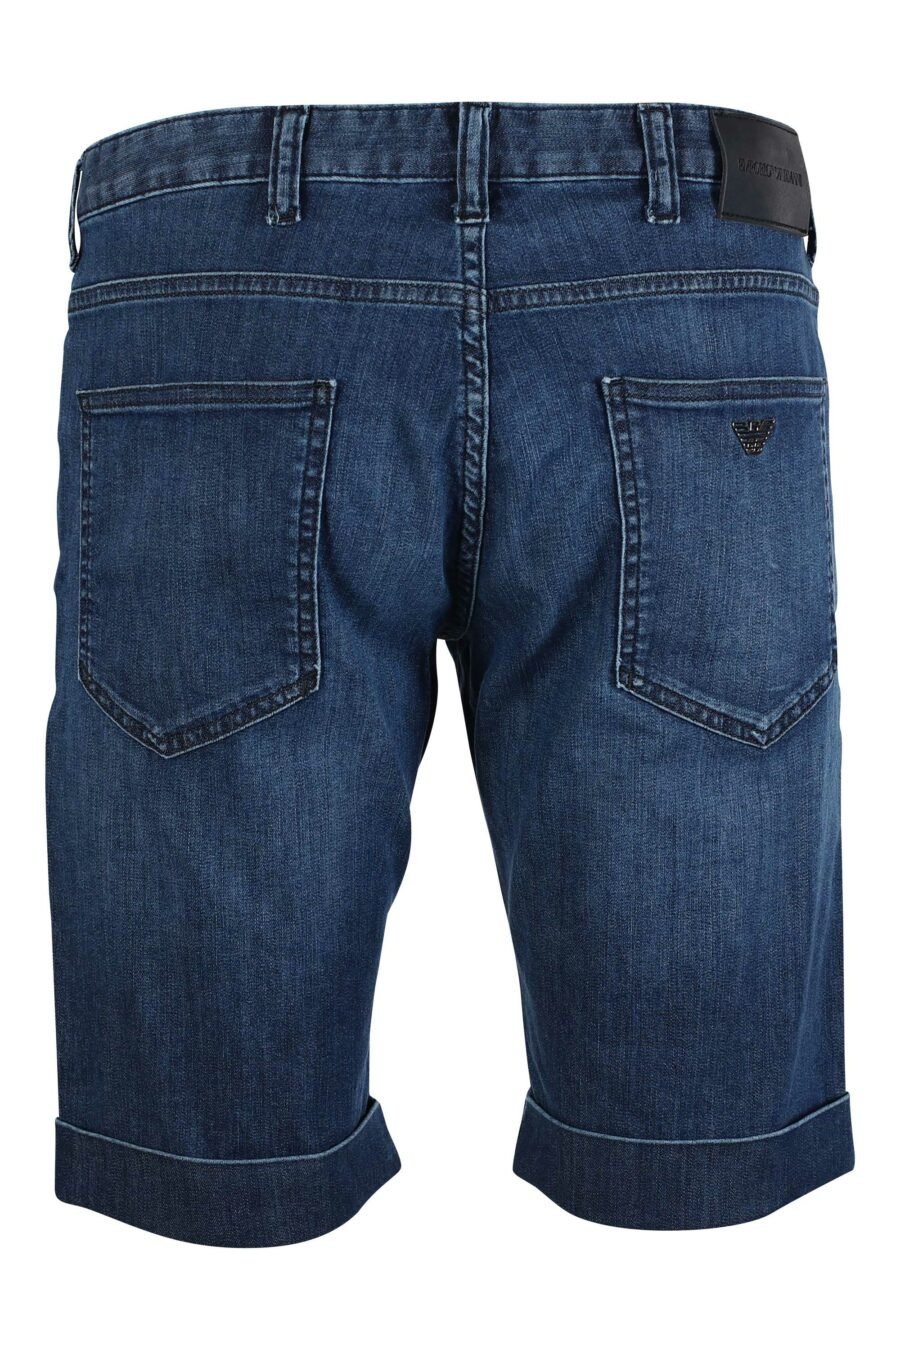 Pantalón vaquero azul corto con minilogo en metal - IMG 9495